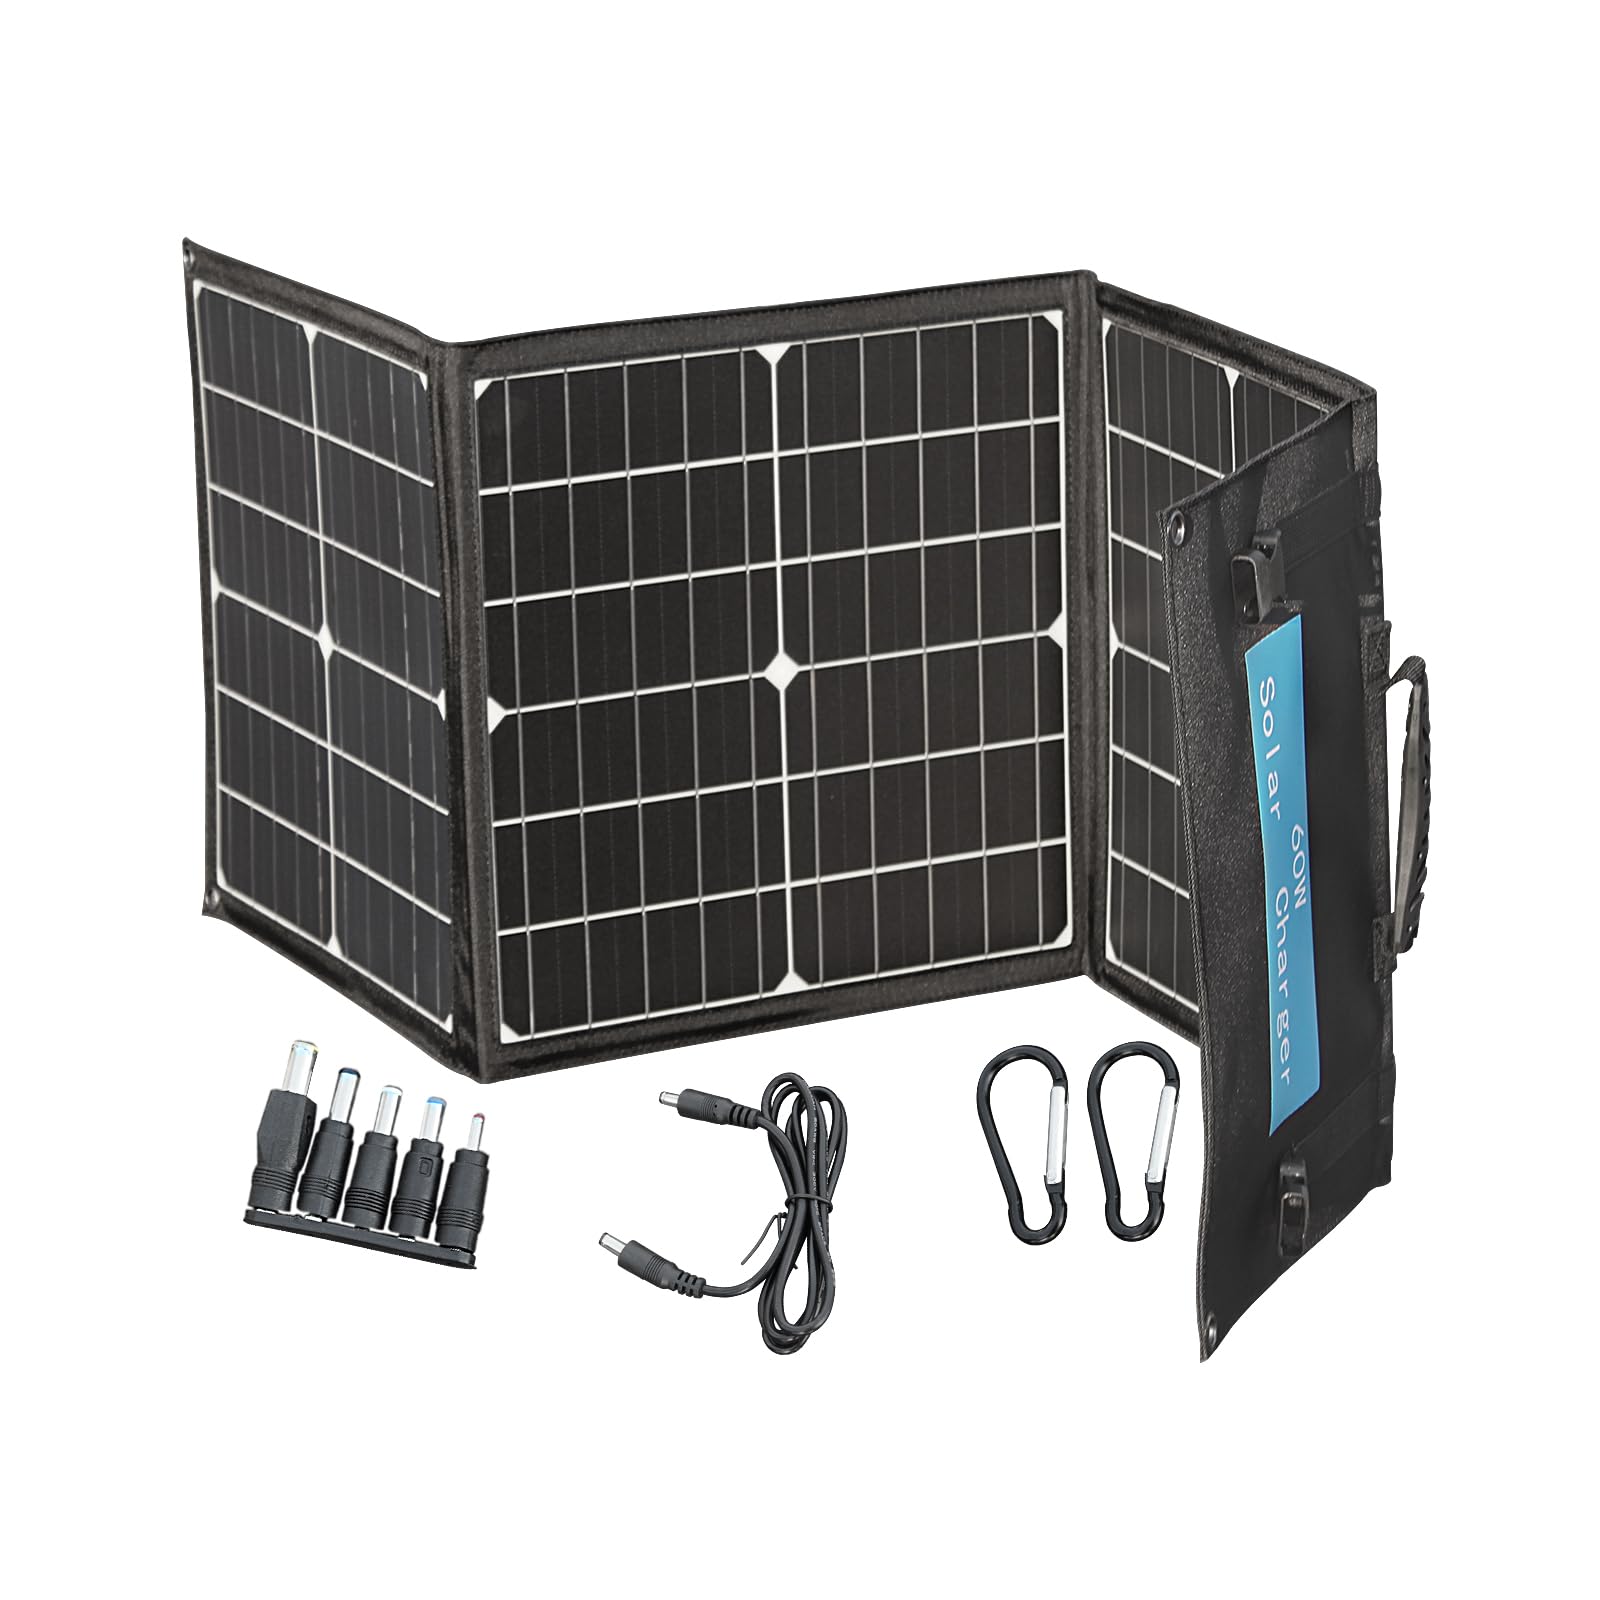 60W Tragbares Solarladegerät für den Außenbereich – Faltbares Solar Panel – 3 wasserdichte Paneele, schnelles Aufladen von DREI Anschlüssen für Camping-iPhone iPad Samsung LG-Telefone und -Geräte.